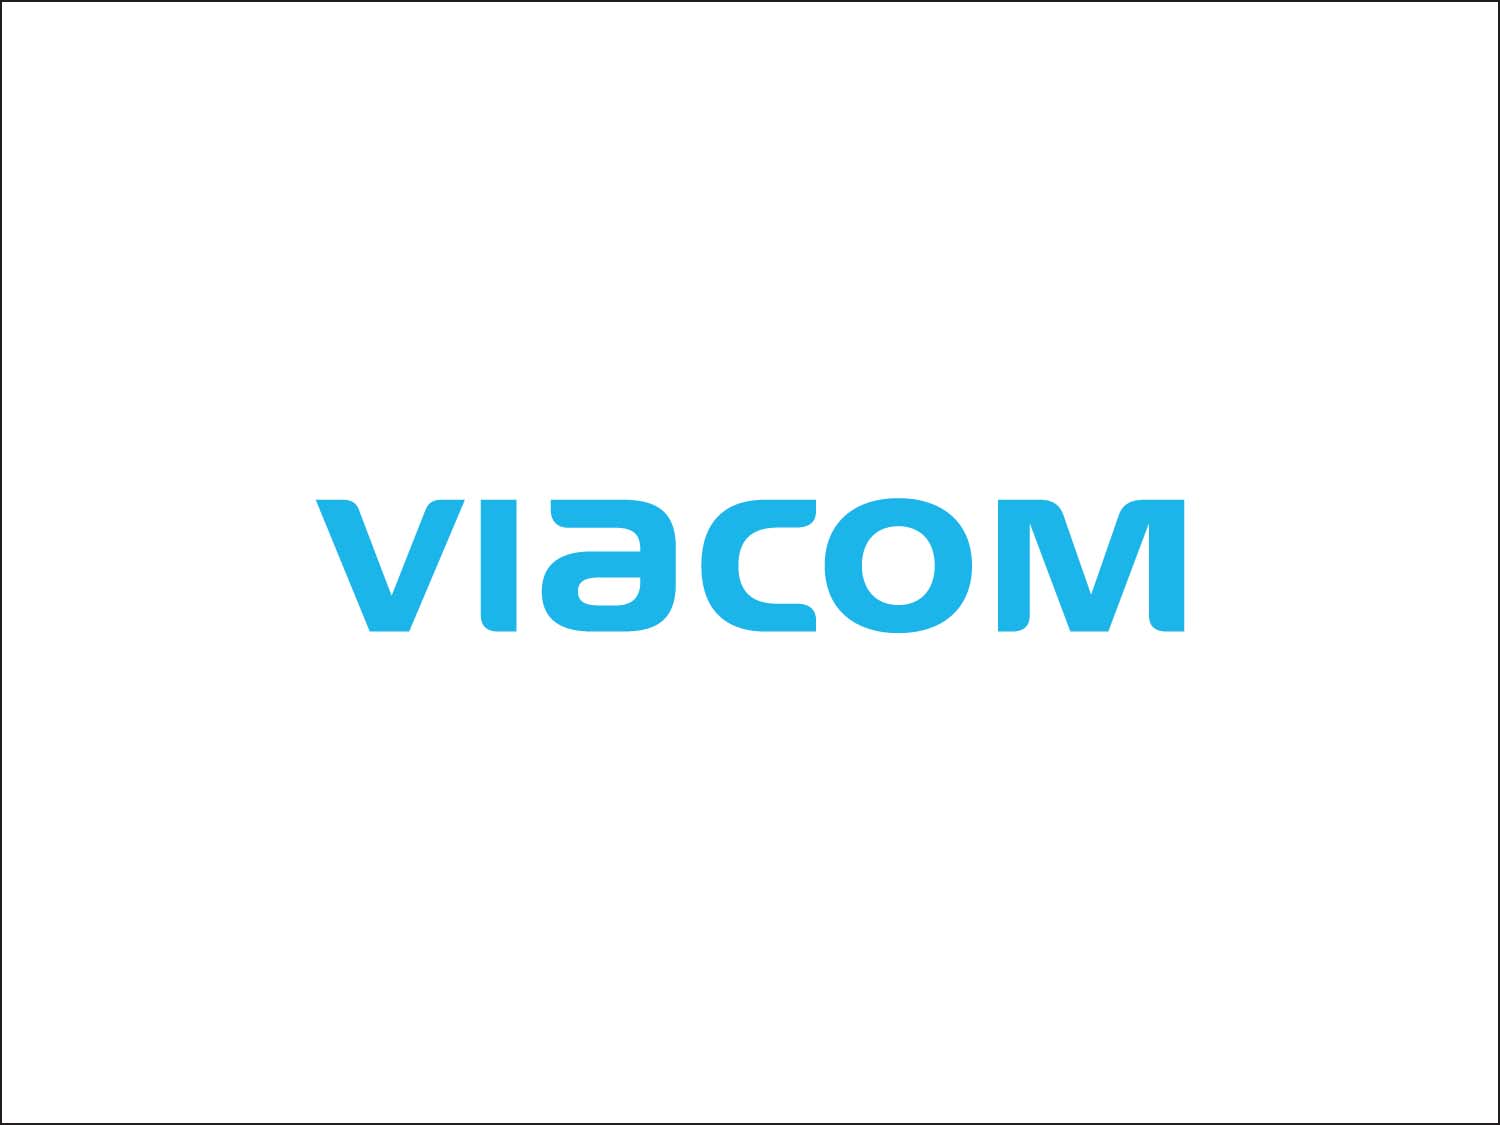 logo of Viacom